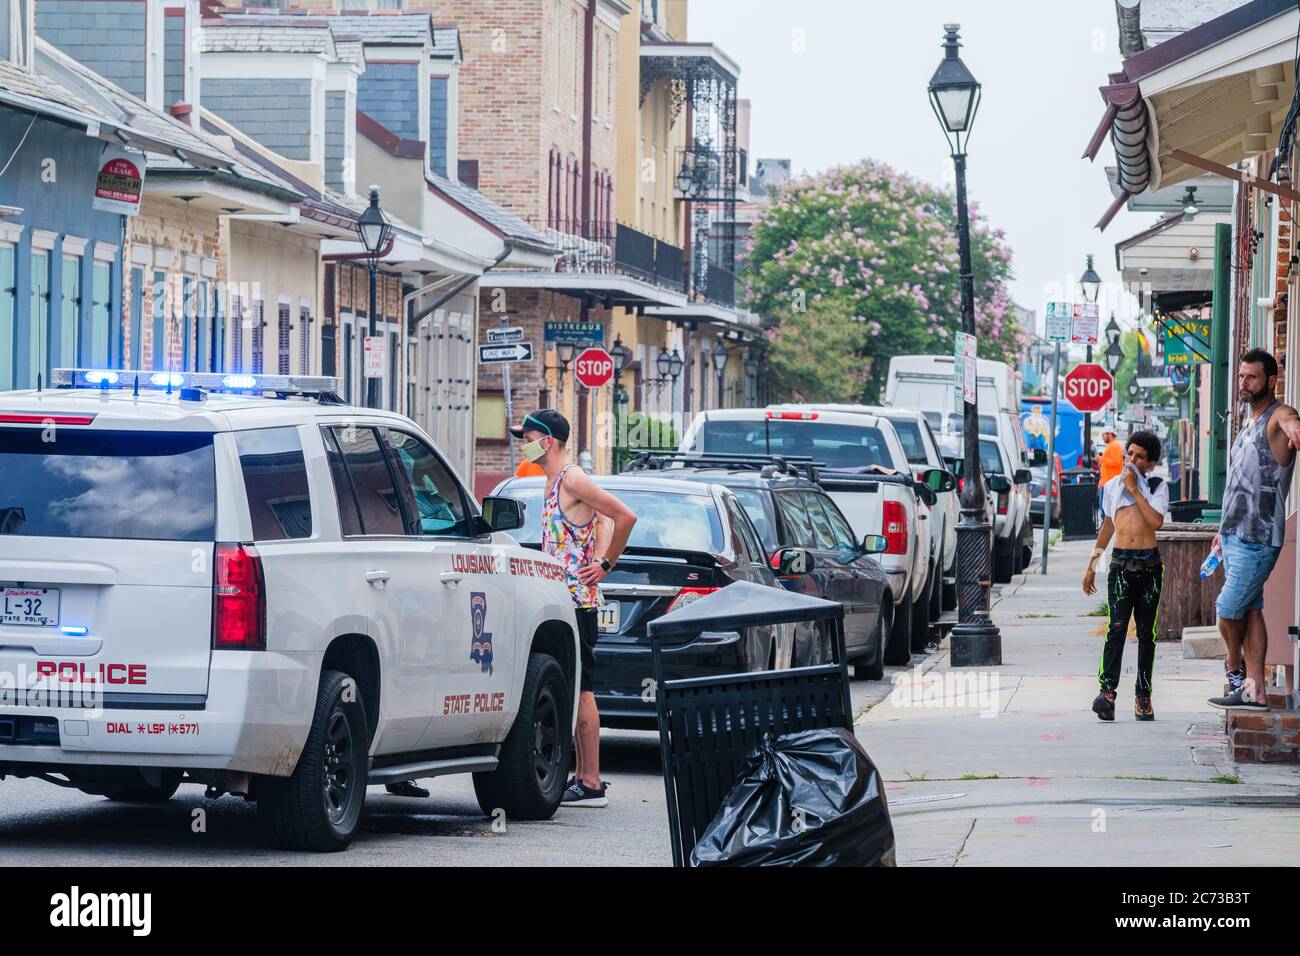 New Orleans, Louisiana/USA - 8. 7. 2020: Polizeiauto mit maskierten Verdächtigen und Zuschauern in Handschellen im French Quarter Stockfoto